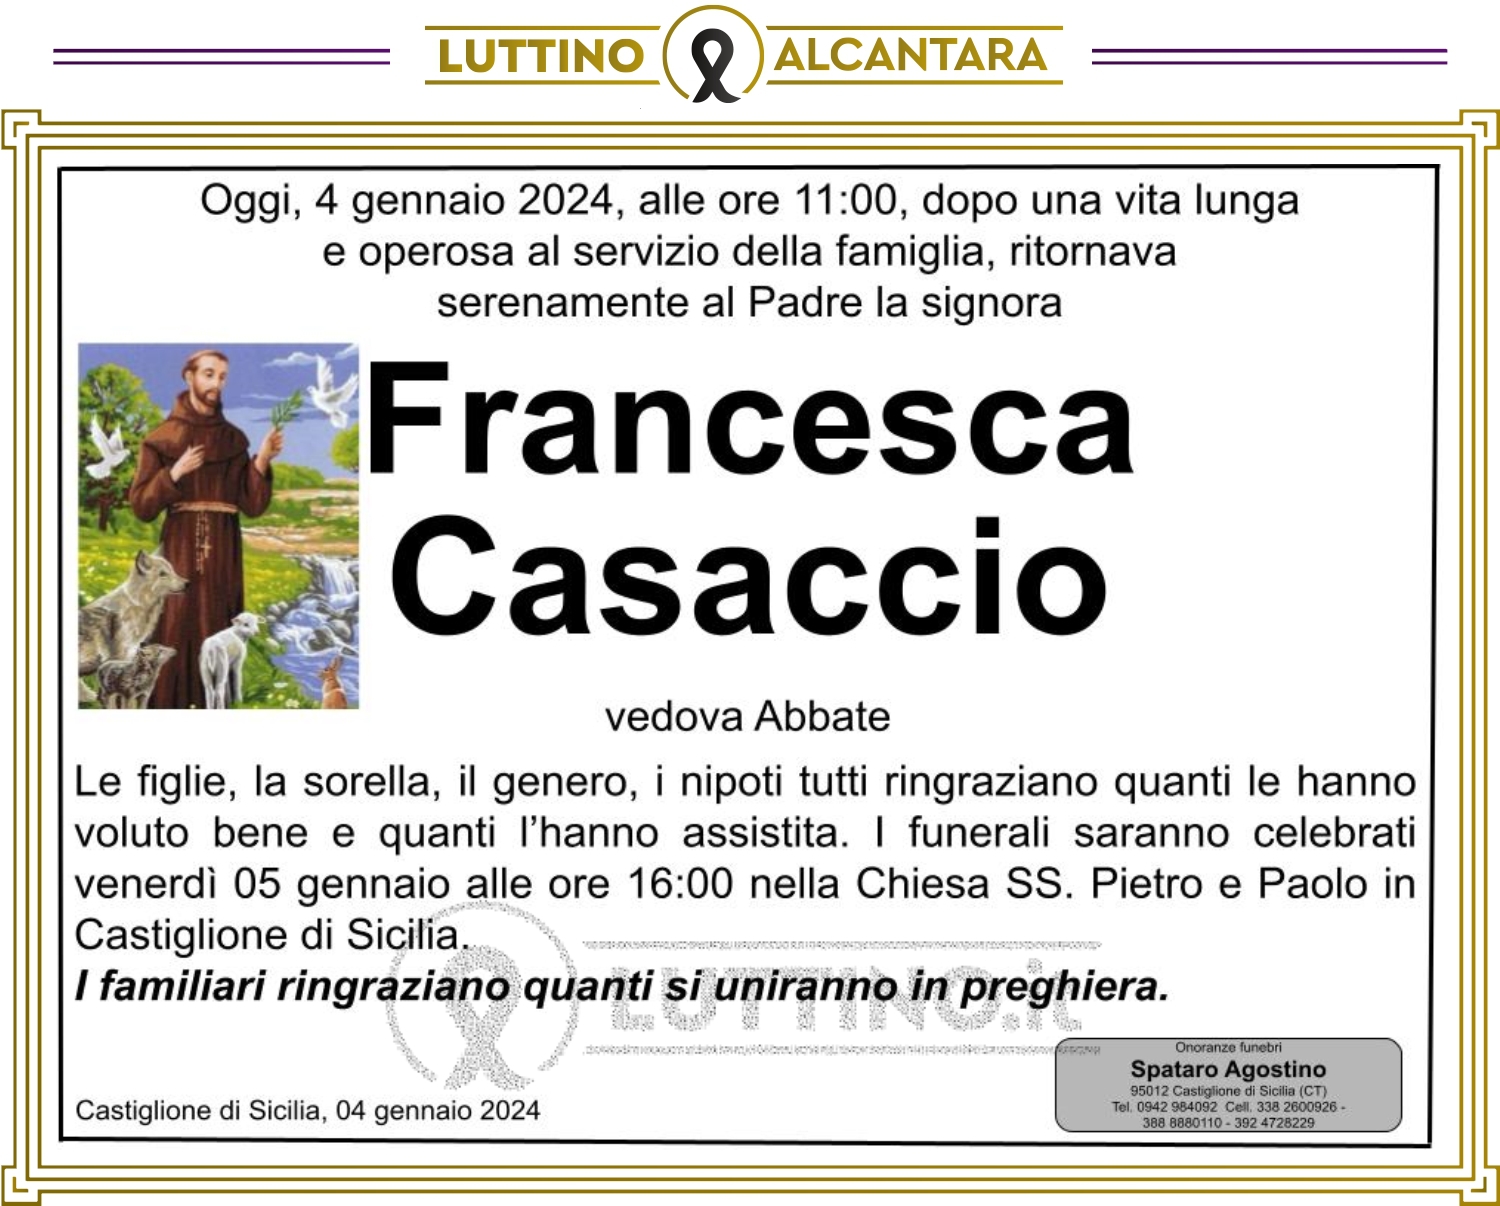 Francesca Casaccio